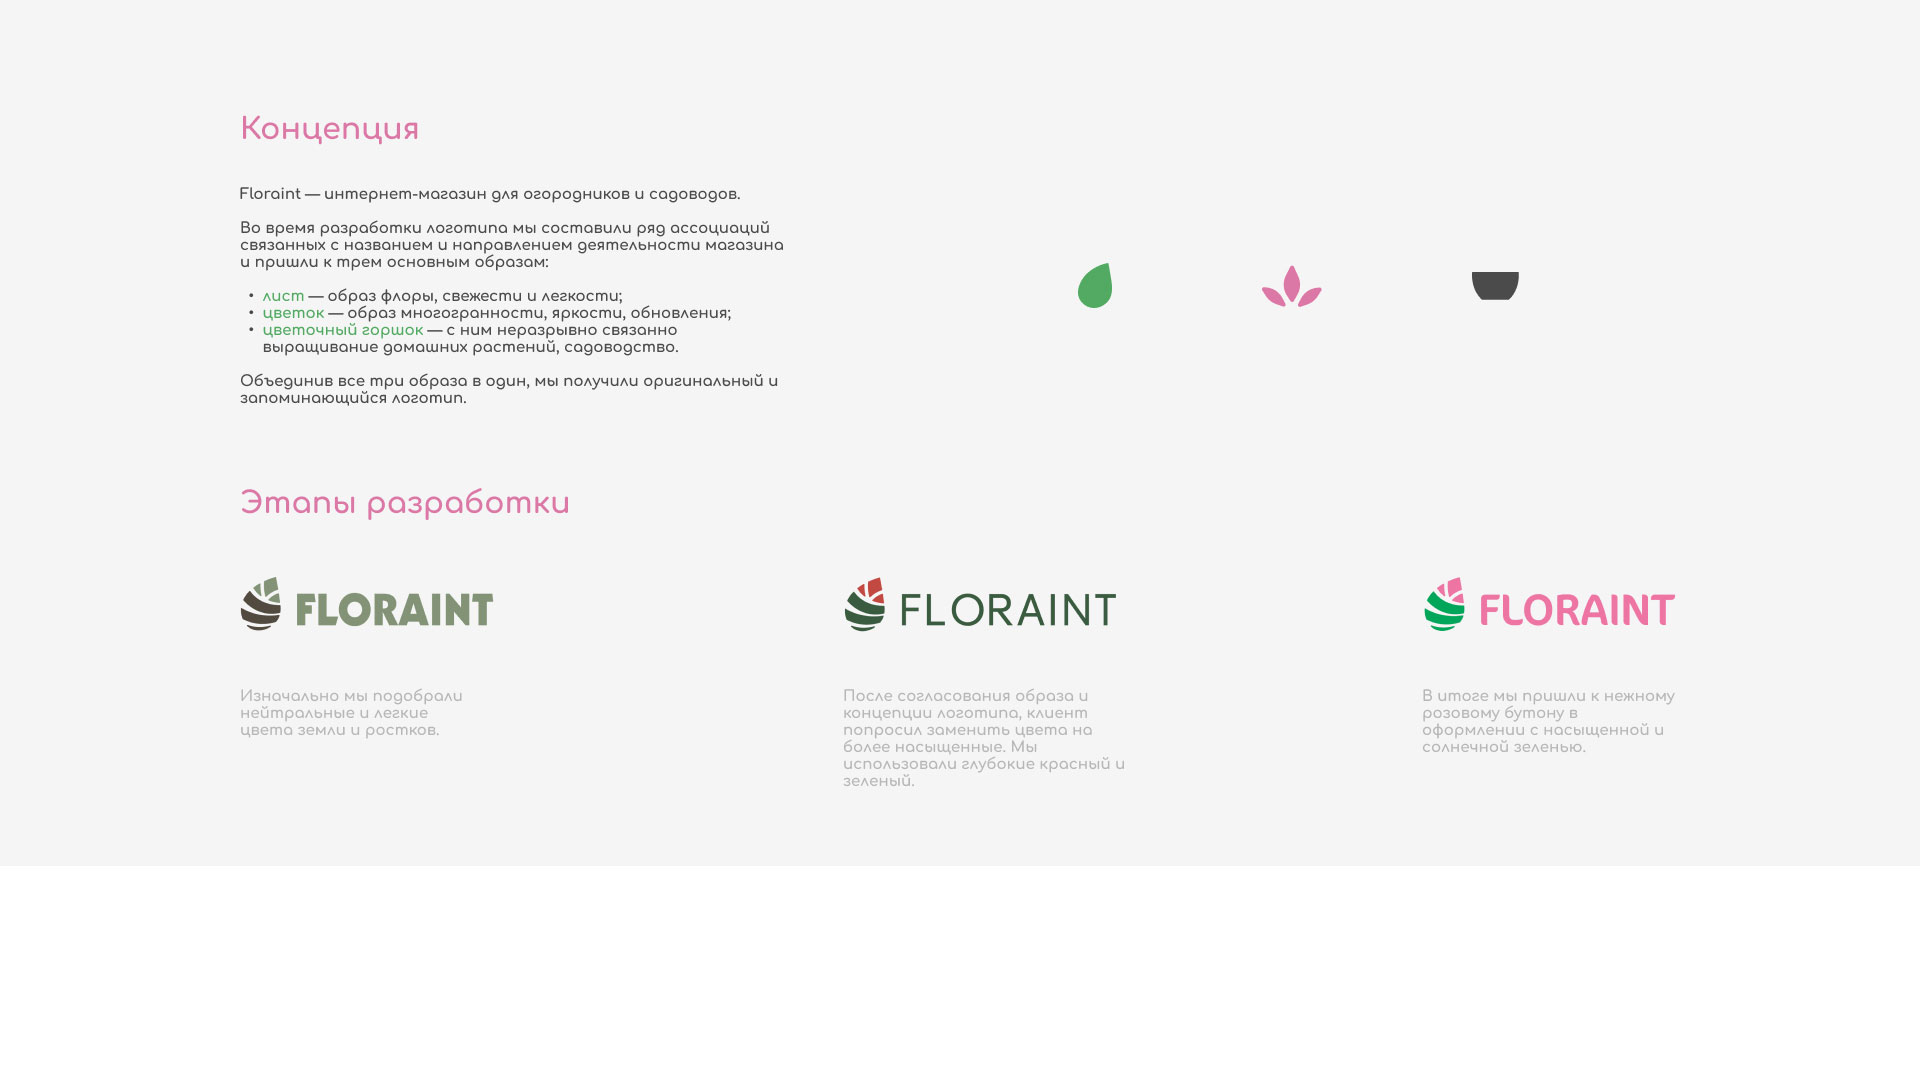 Создание логотипа и интернет-магазина «FLORAINT» в 